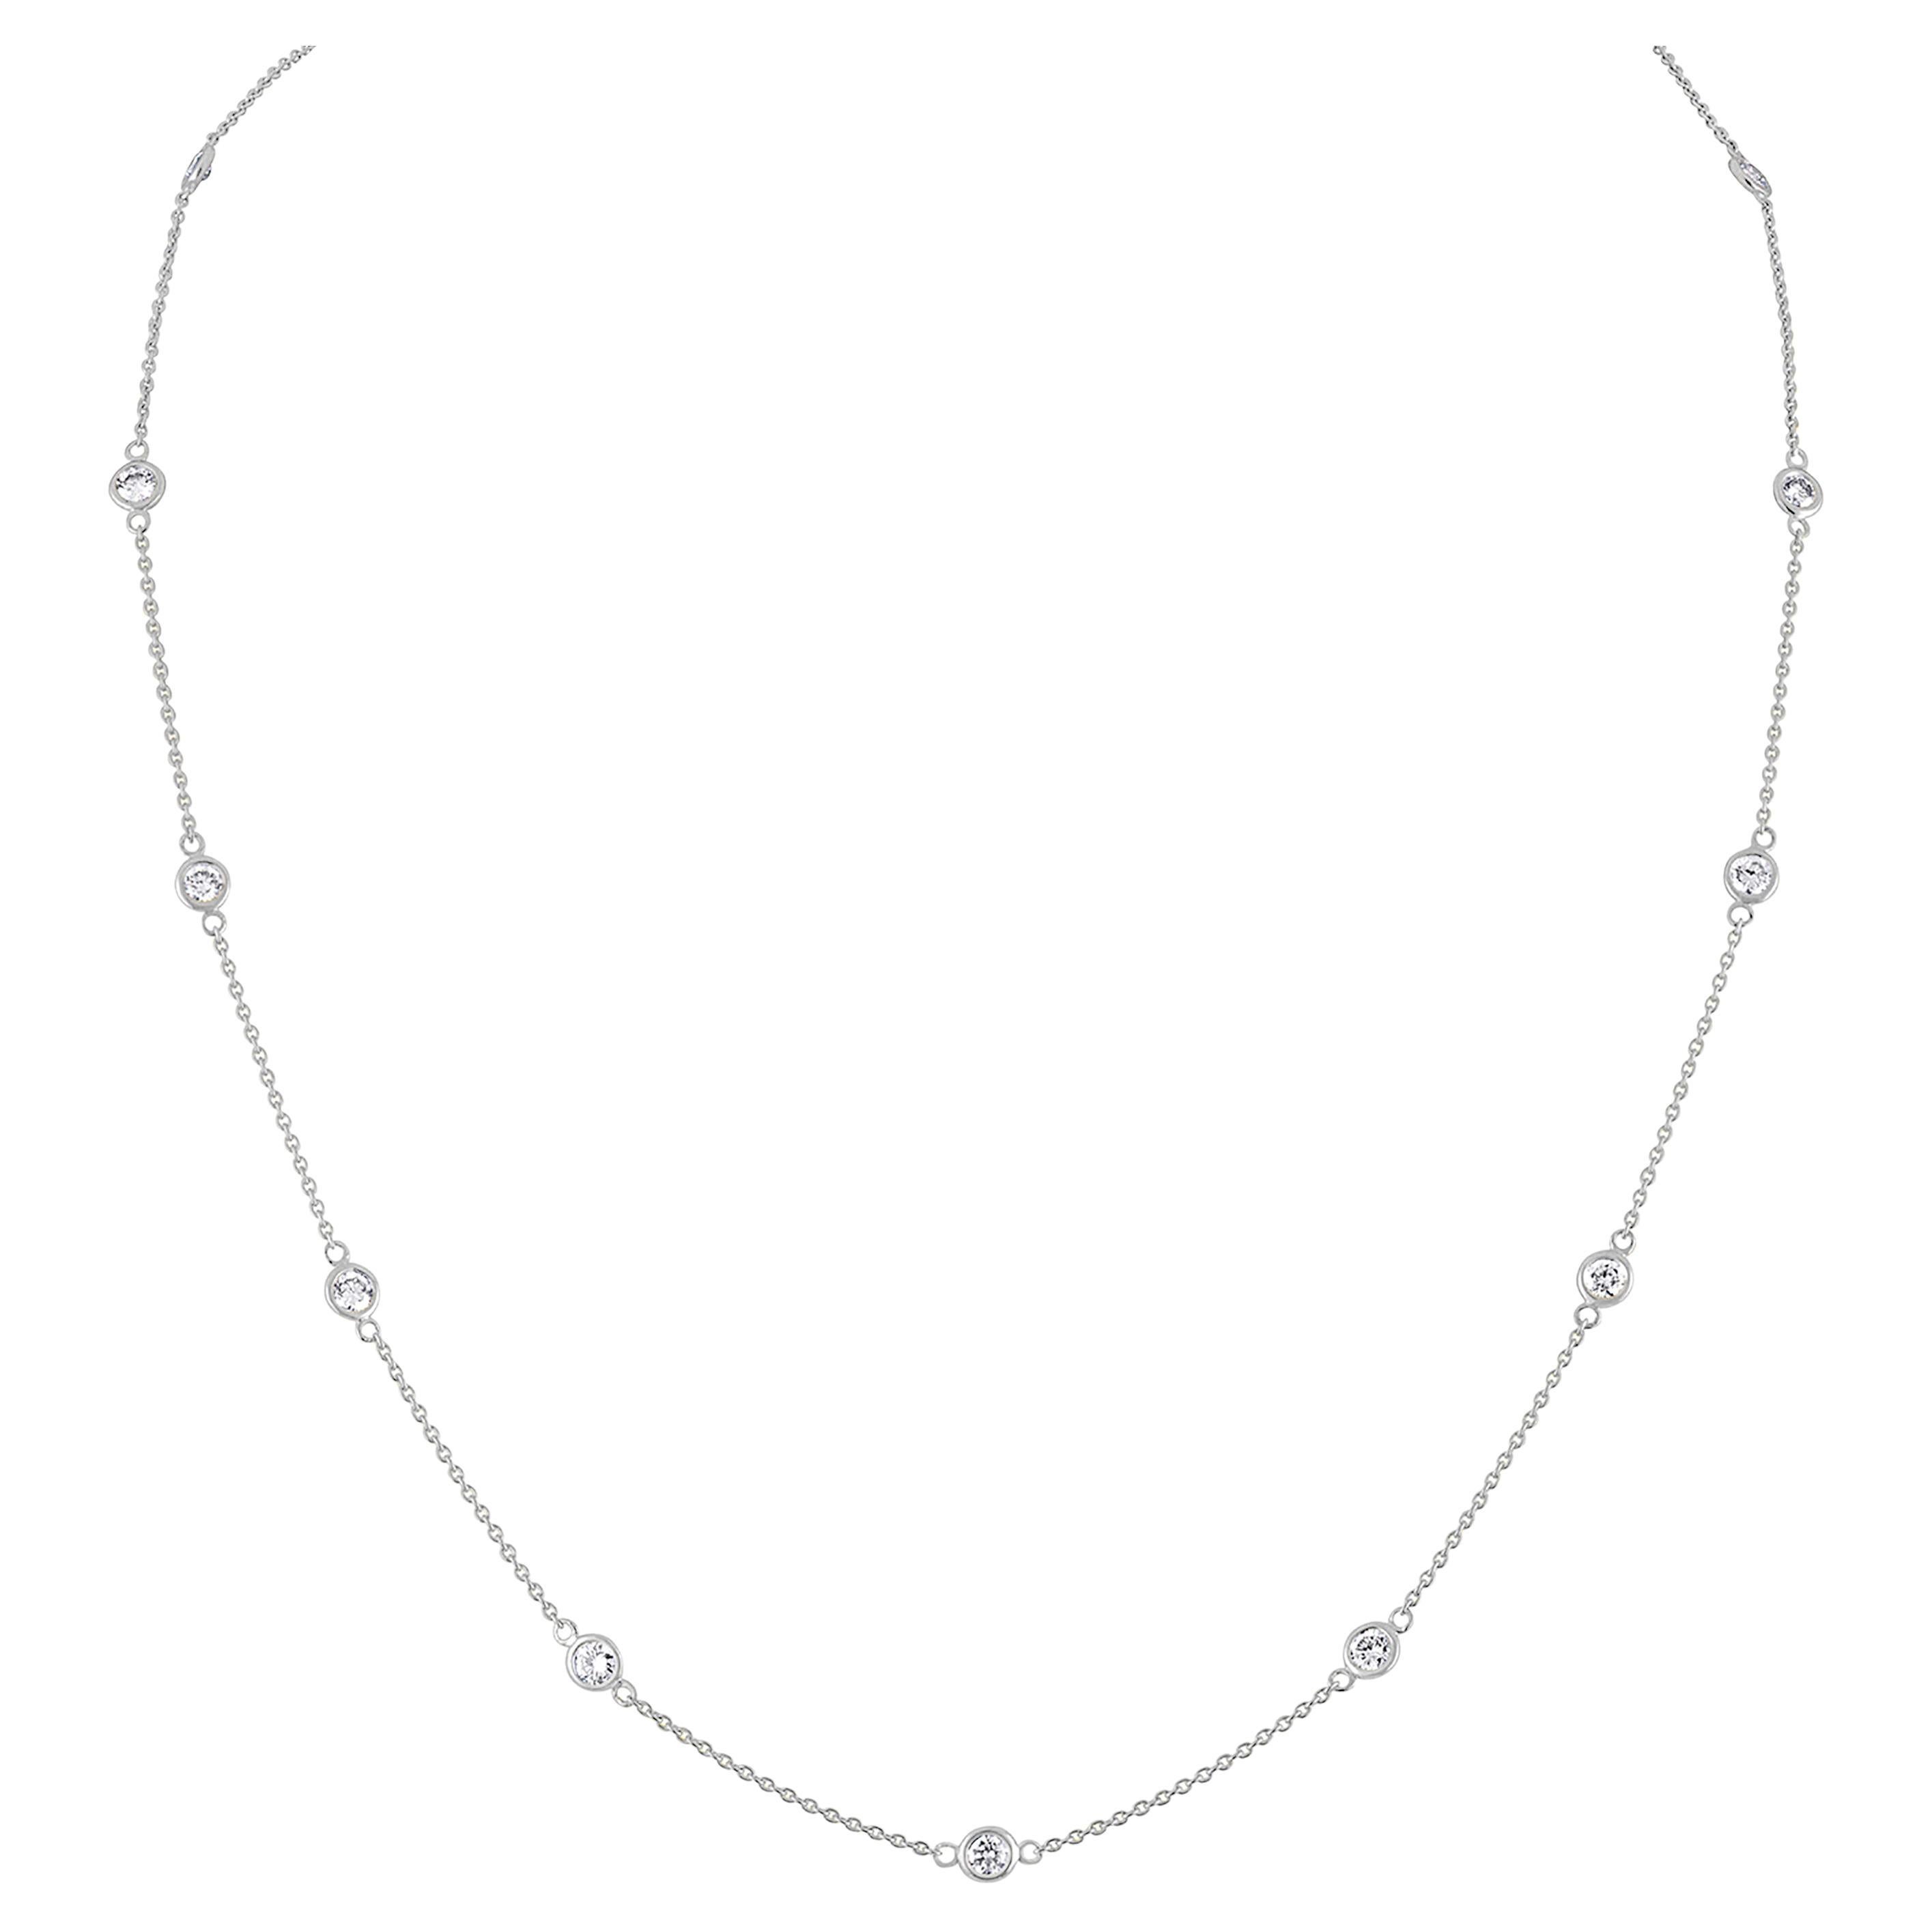 14K White Gold 1 1/10 Carat Diamond Station Necklace